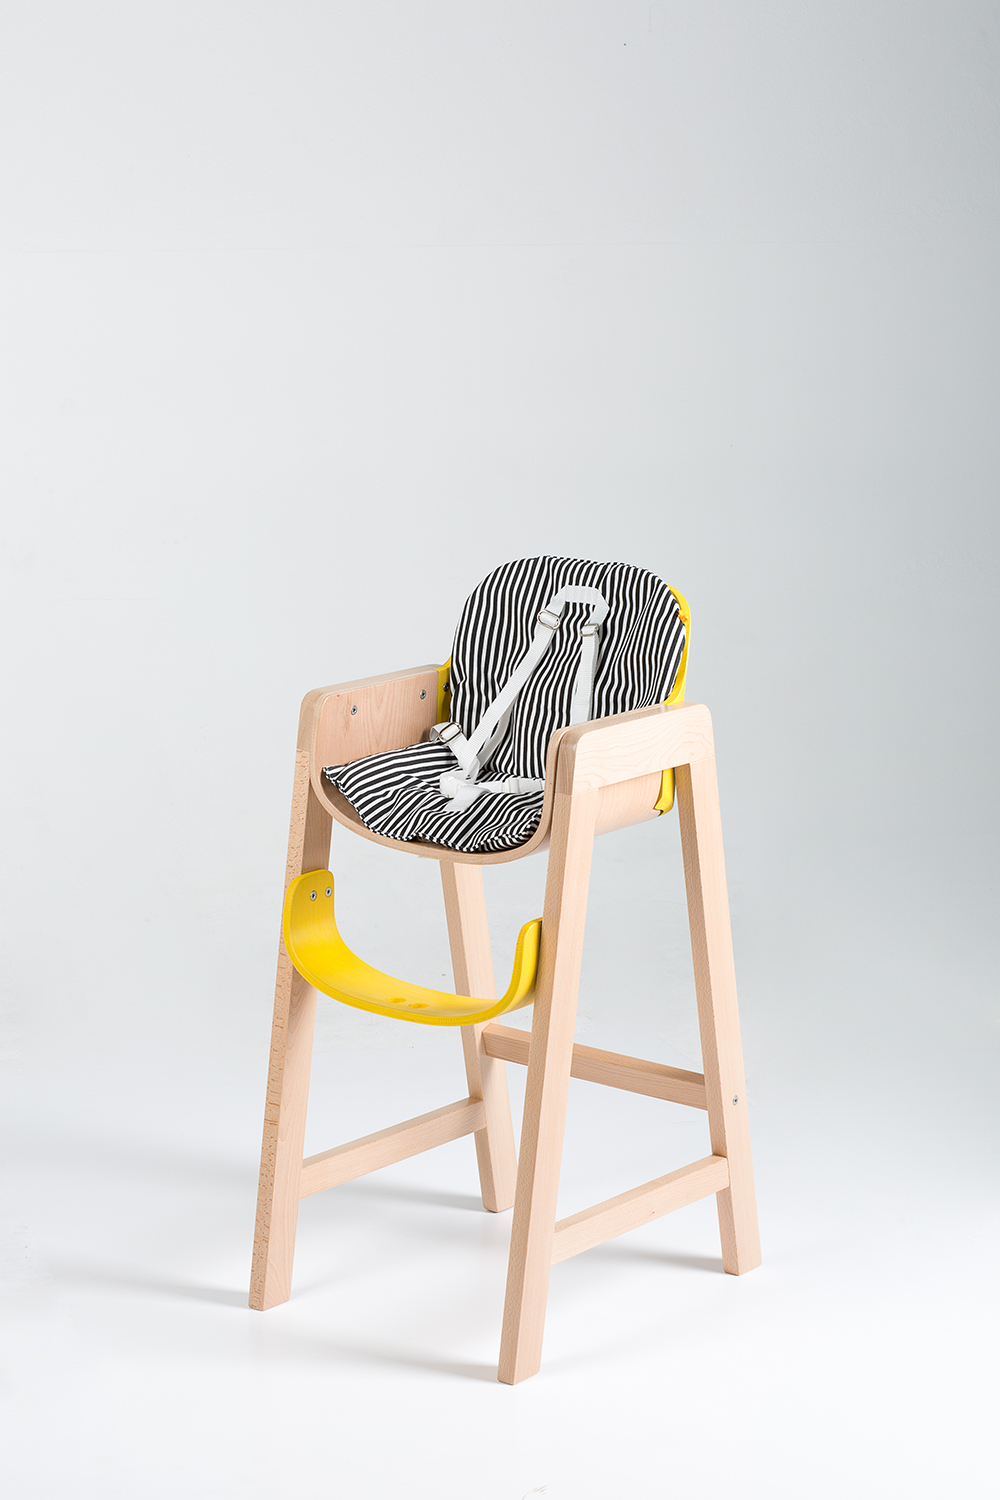 children´s high chair high chair Emma bent wood wooden chair dining chair yellow chair child wood